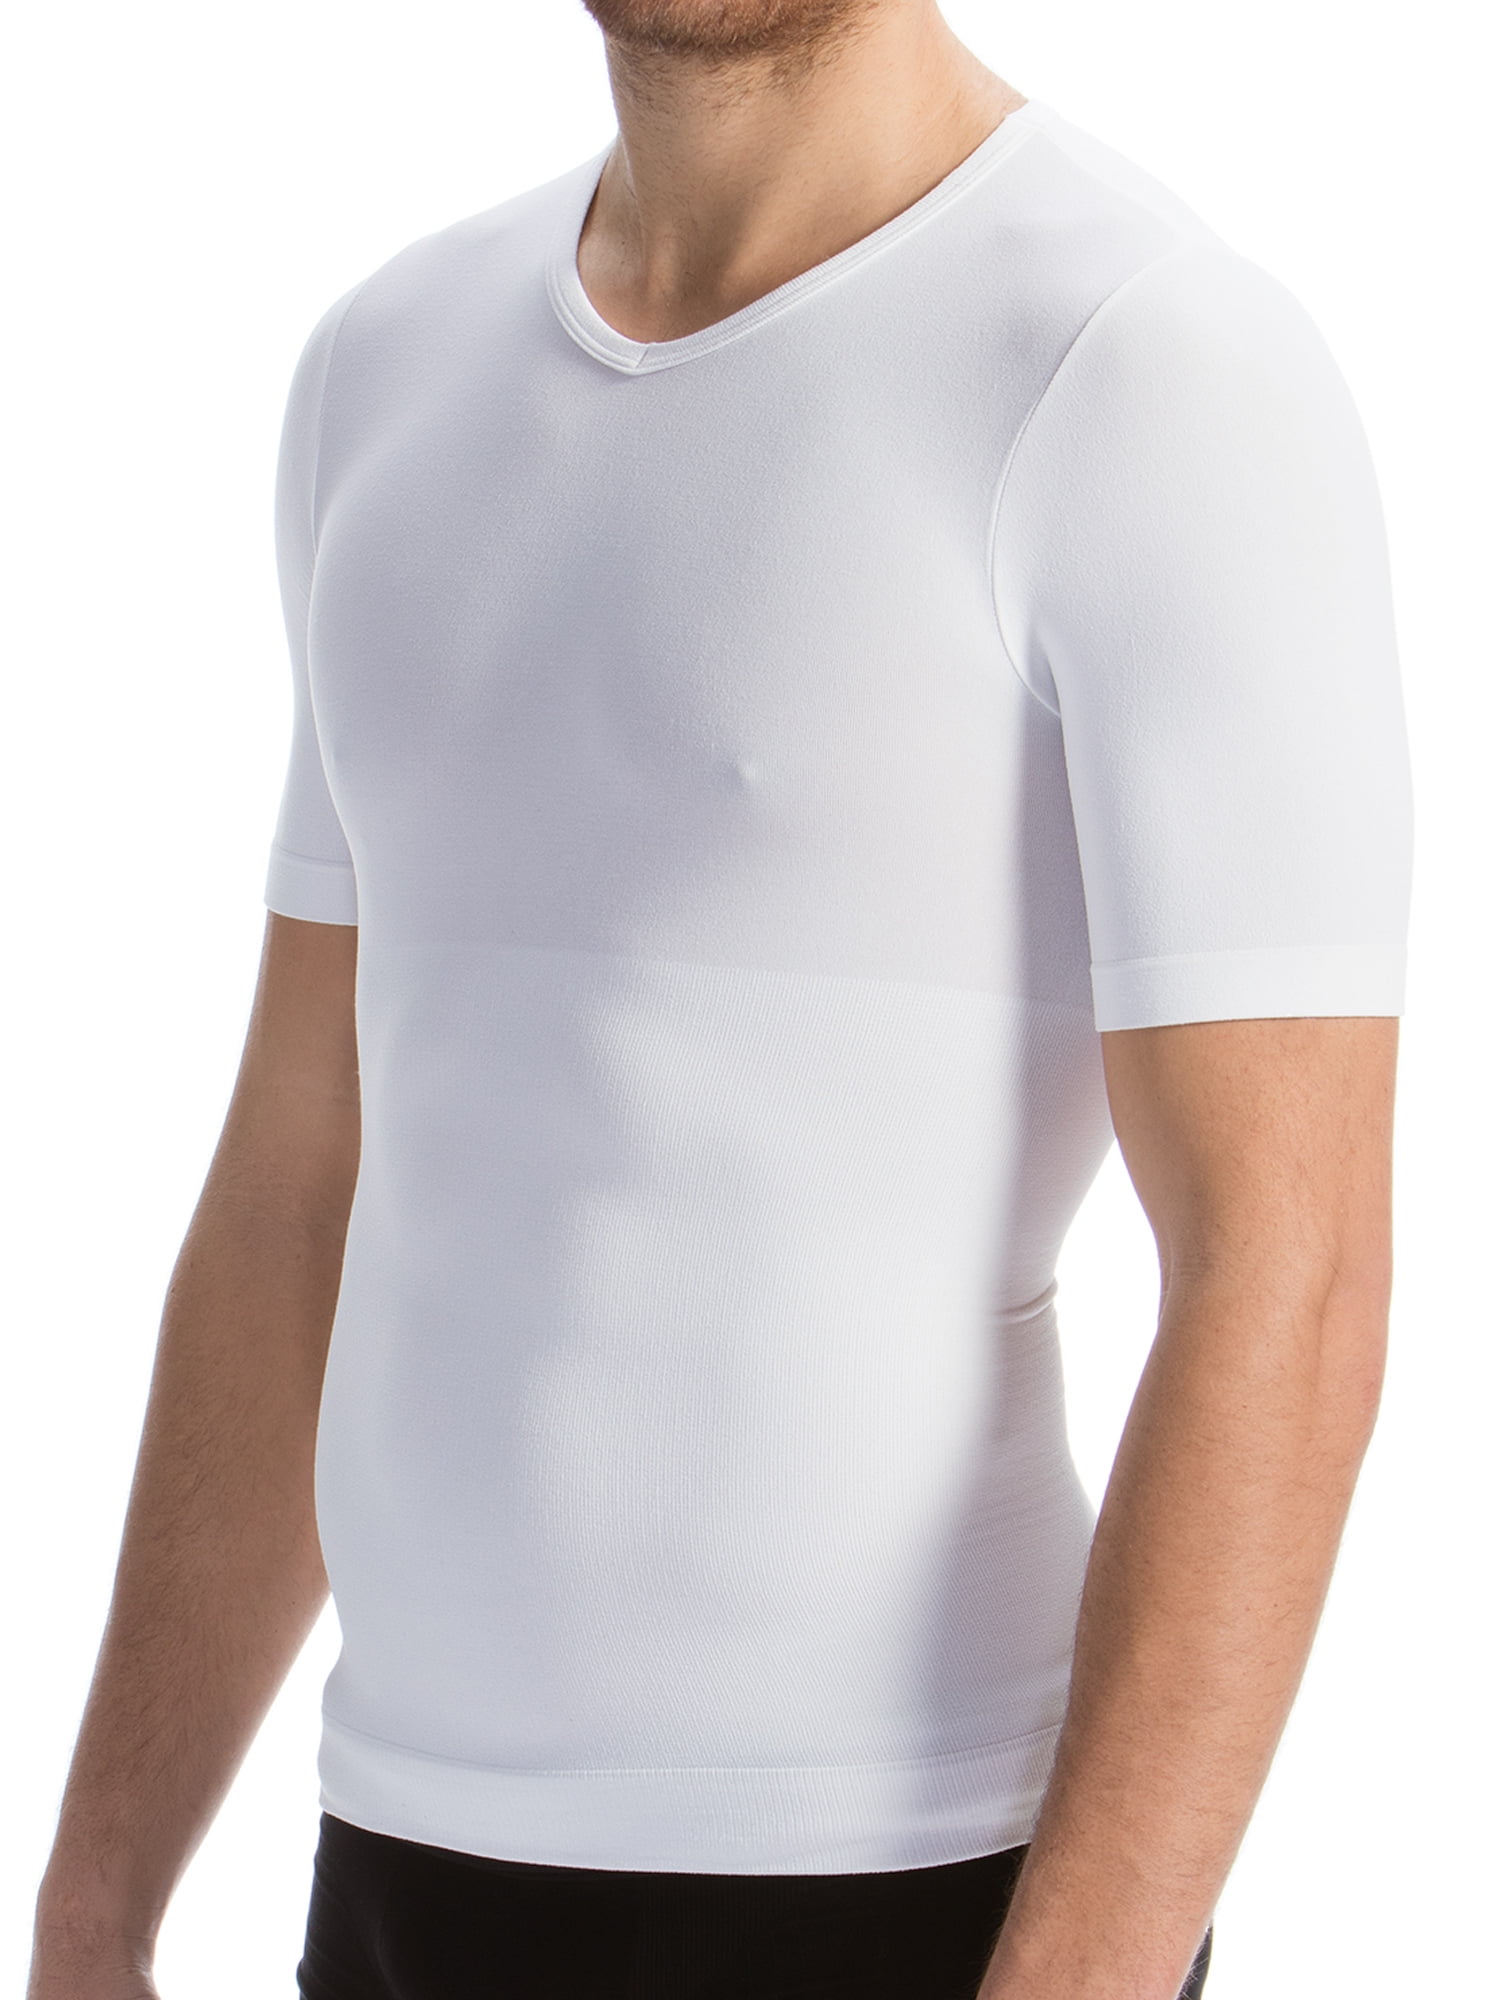 CYSM 266 Fajate Fajas Colombianas Men's T-Shirt Body Shaper Shapewear 